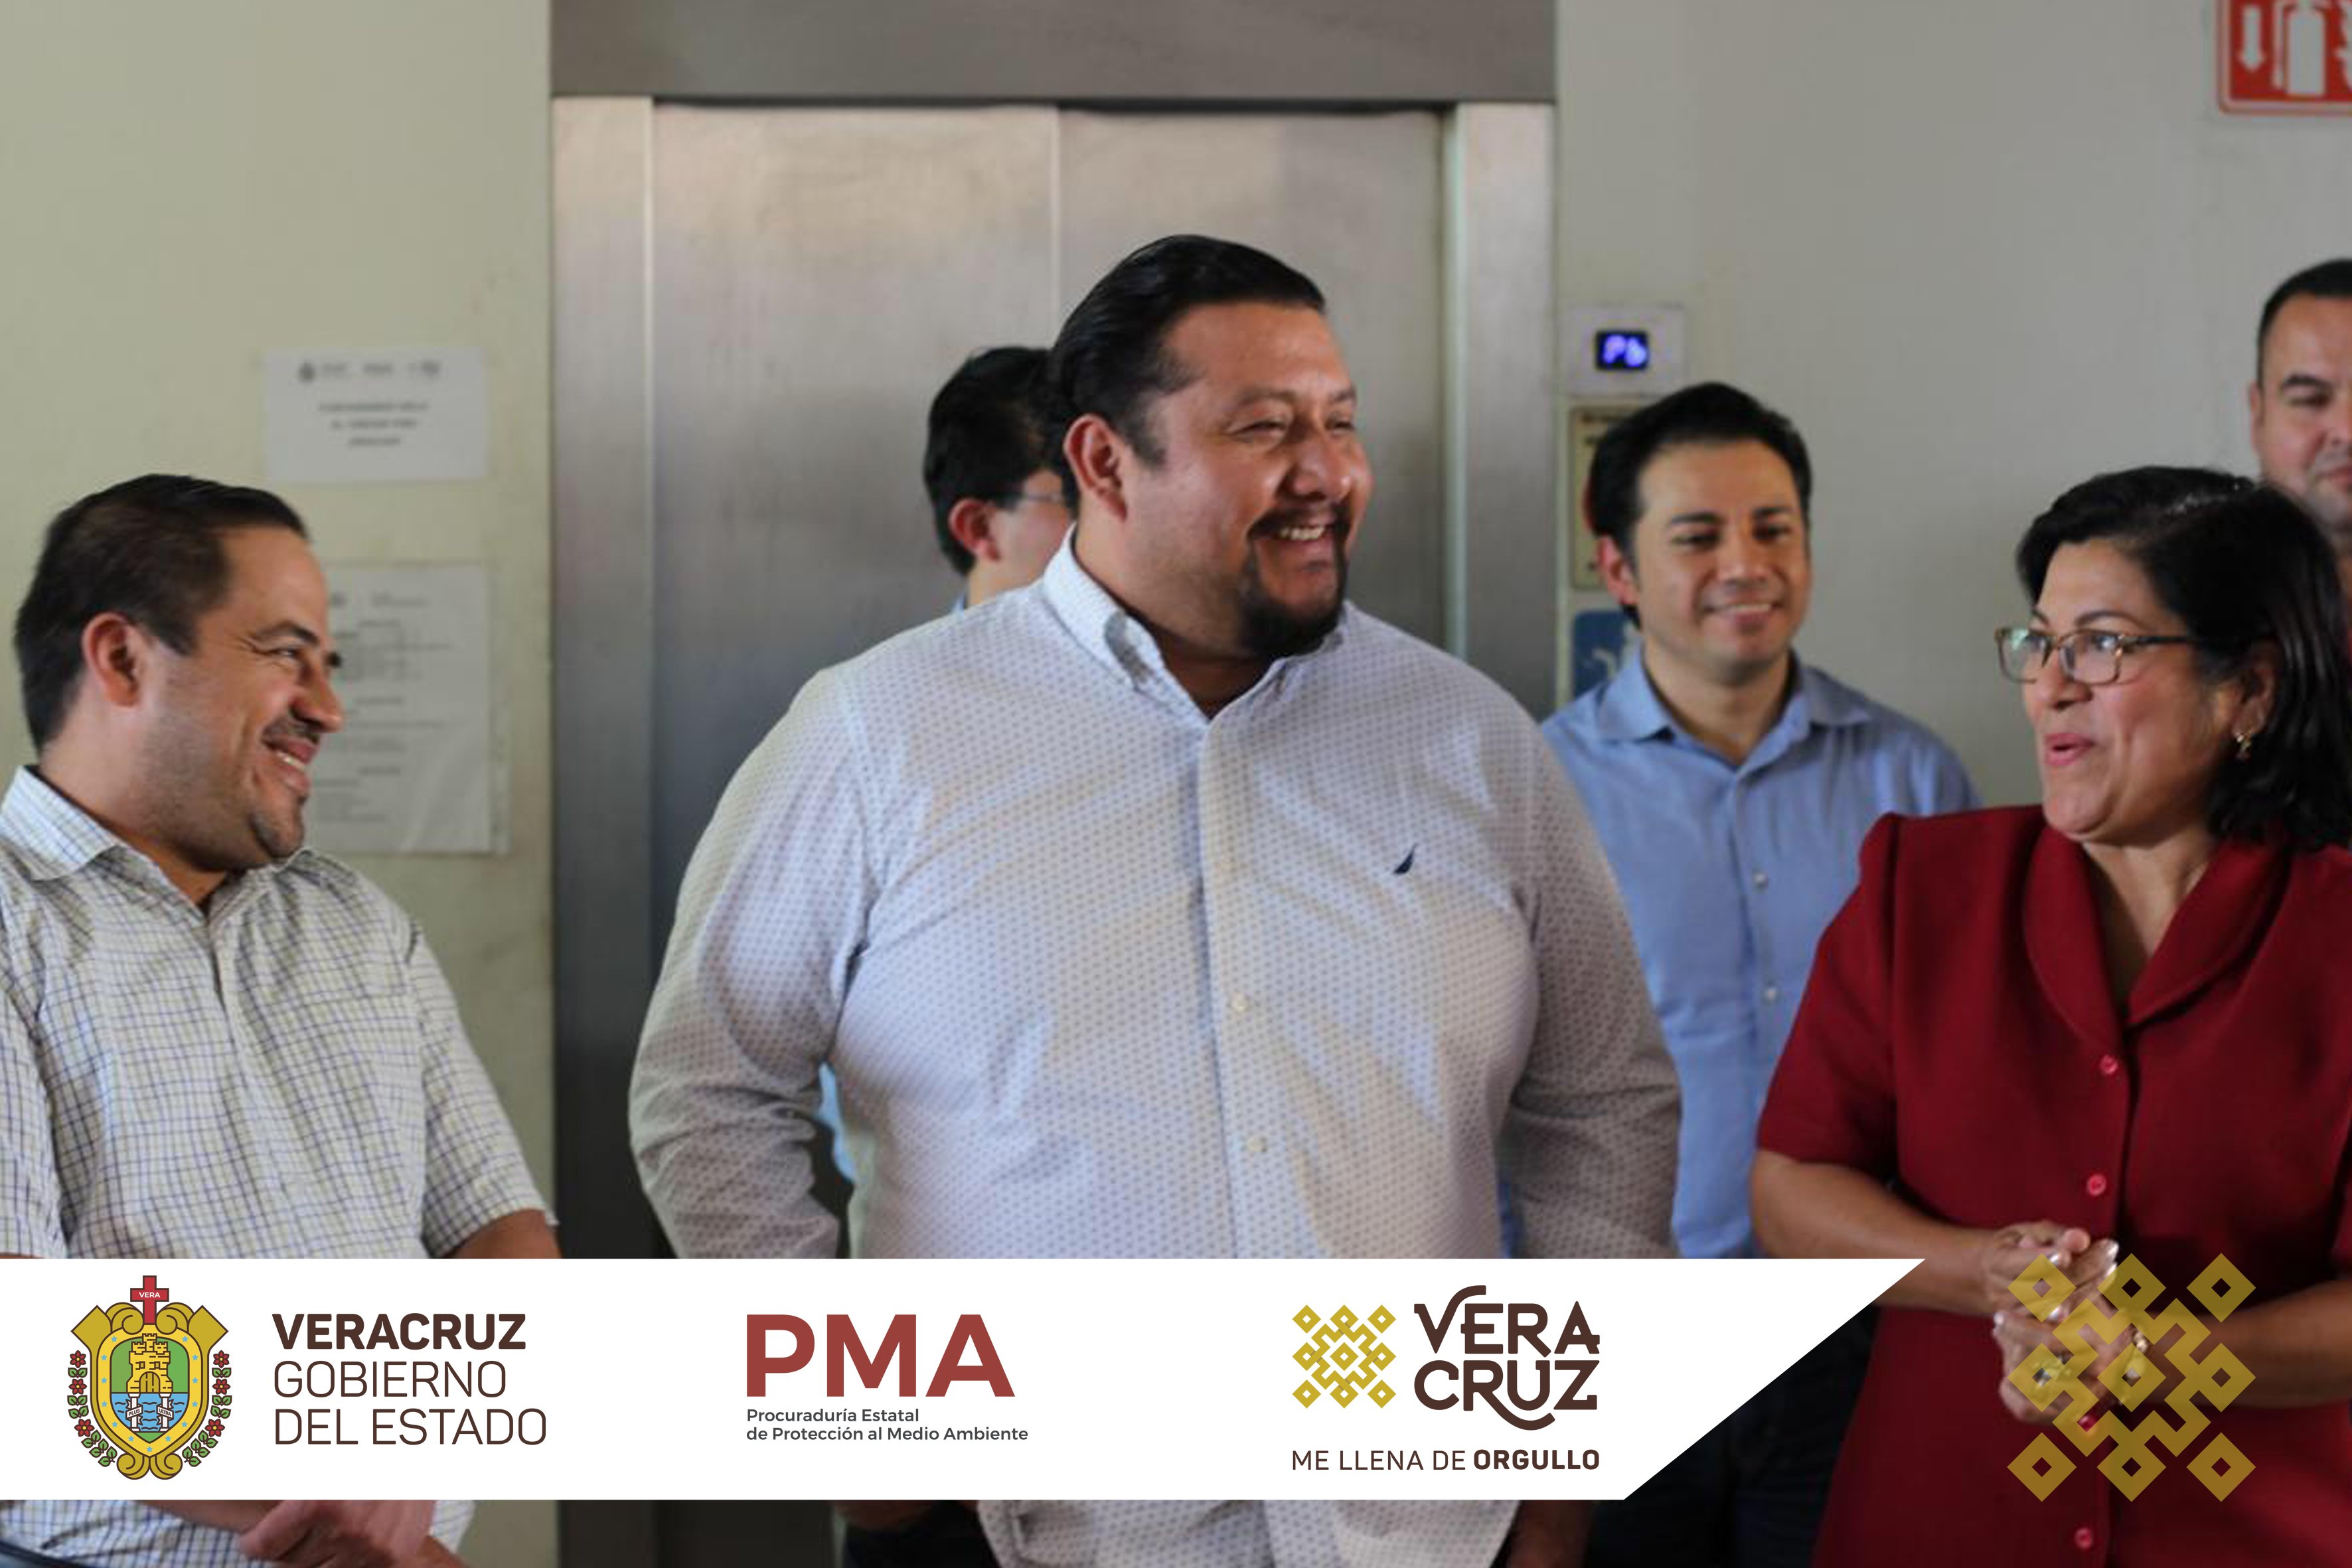 PMA Veracruz på Twitter: "Este día, el Procurador Estatal de Protección al  Medio Ambiente, Ing. Sergio Rodríguez Cortés, recibió junto con el personal  de la #PMA a la Secretaria de Medio Ambiente,